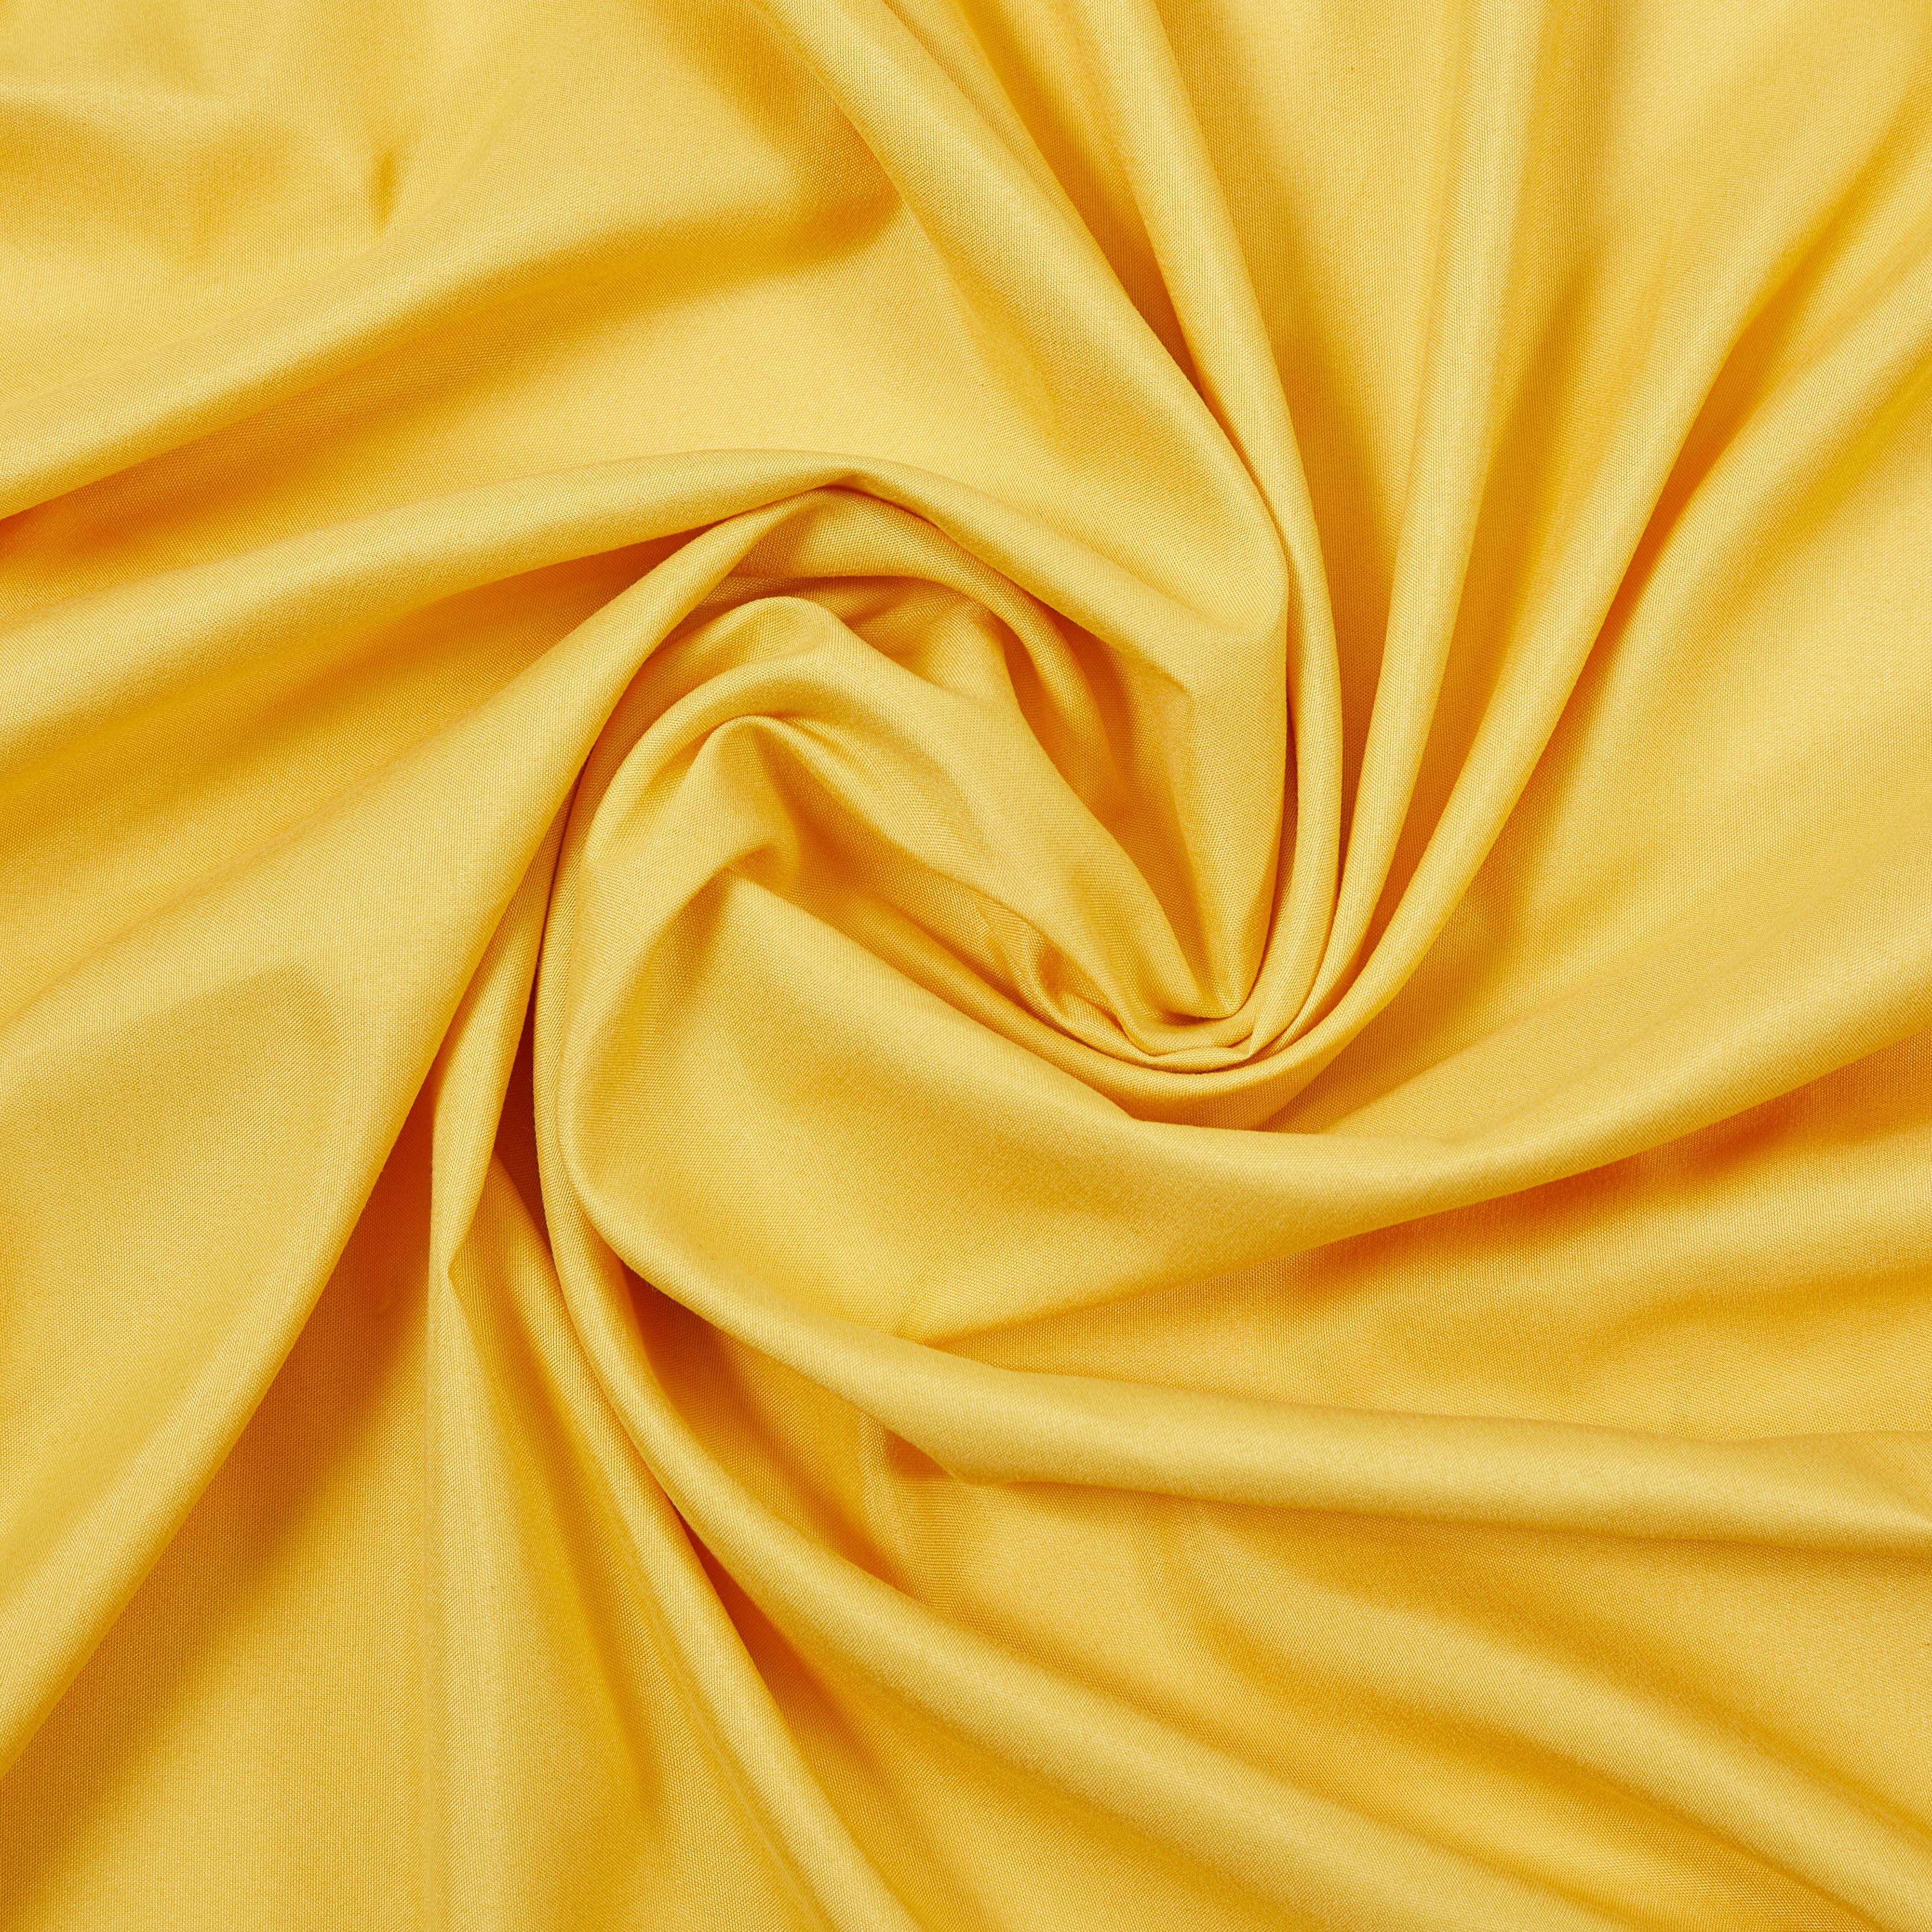 Závěs S Kroužky Abby, 140/235 Cm - žlutá, Konvenční, textil (140/235cm) - Modern Living